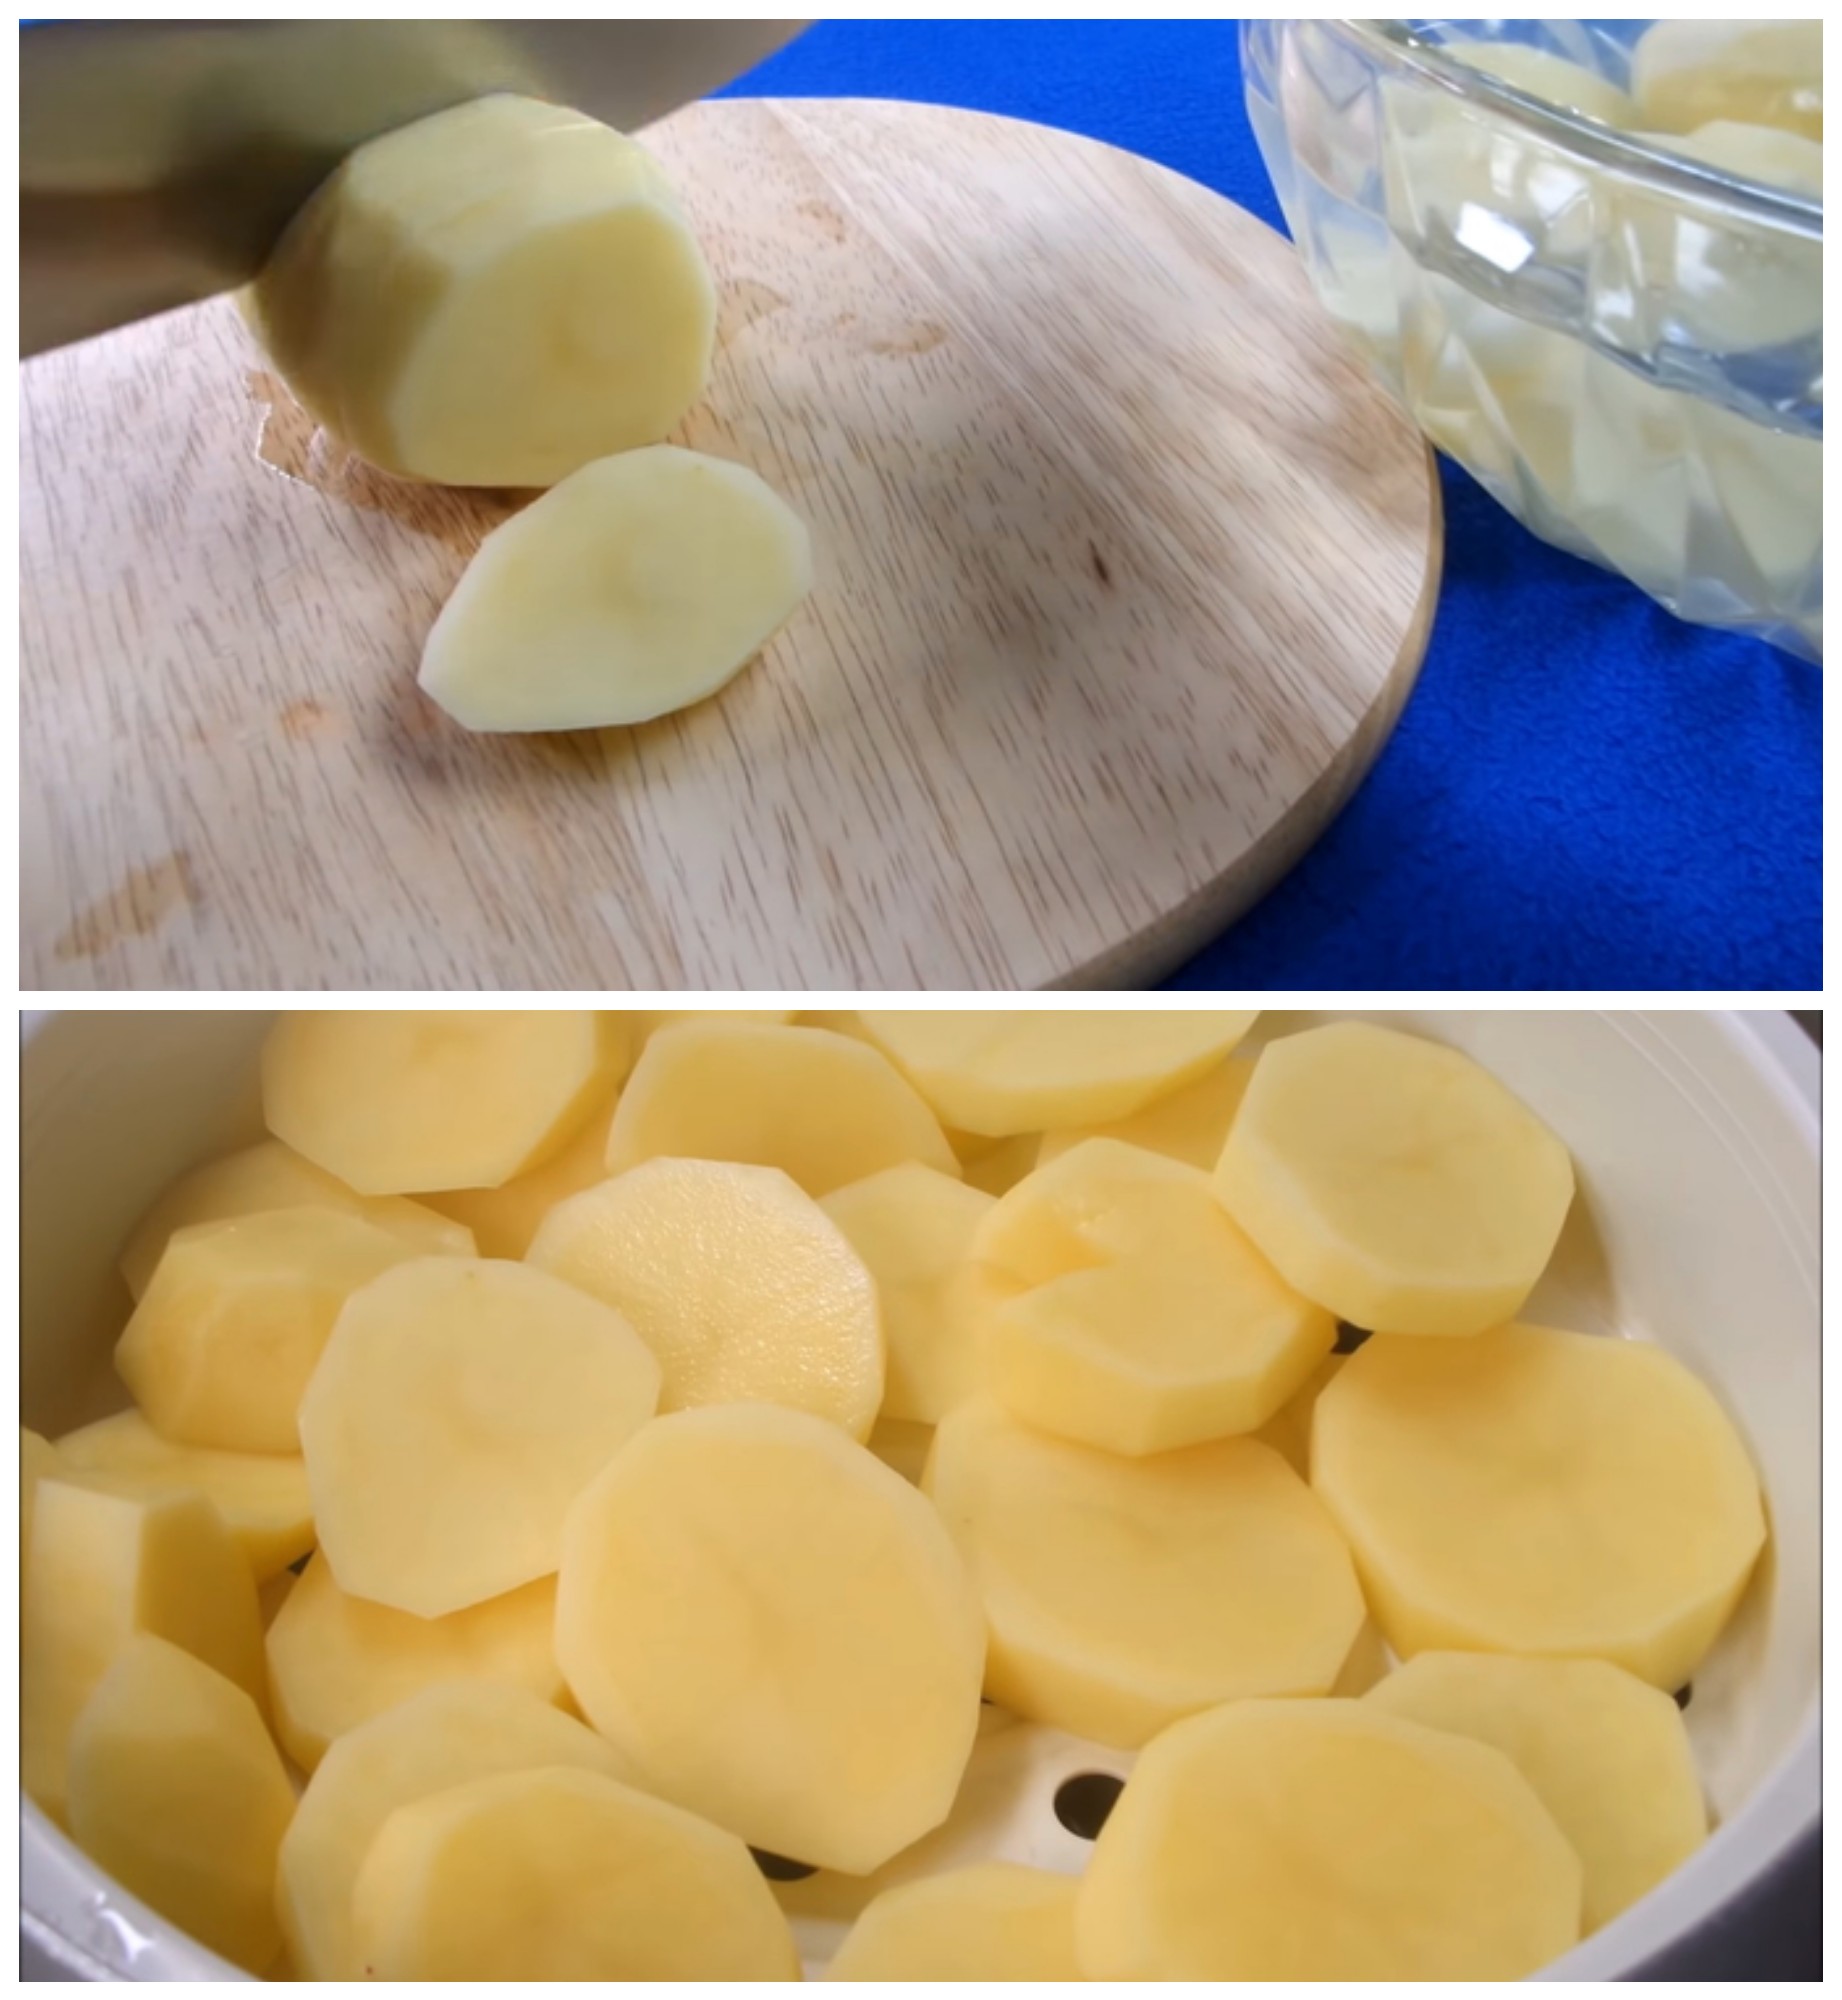 Sơ chế khoai tây chuẩn bị làm món ăn